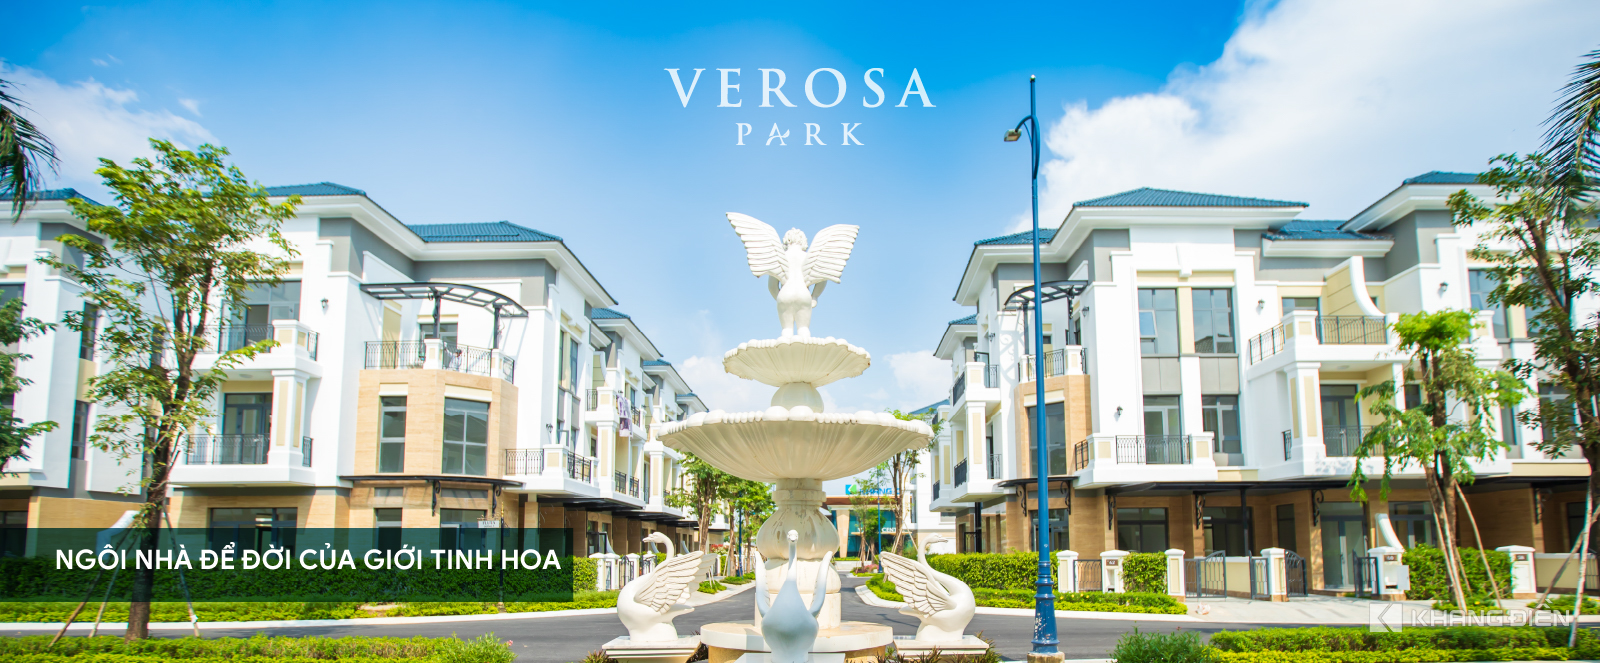 Verosa Park - Dự án đẹp